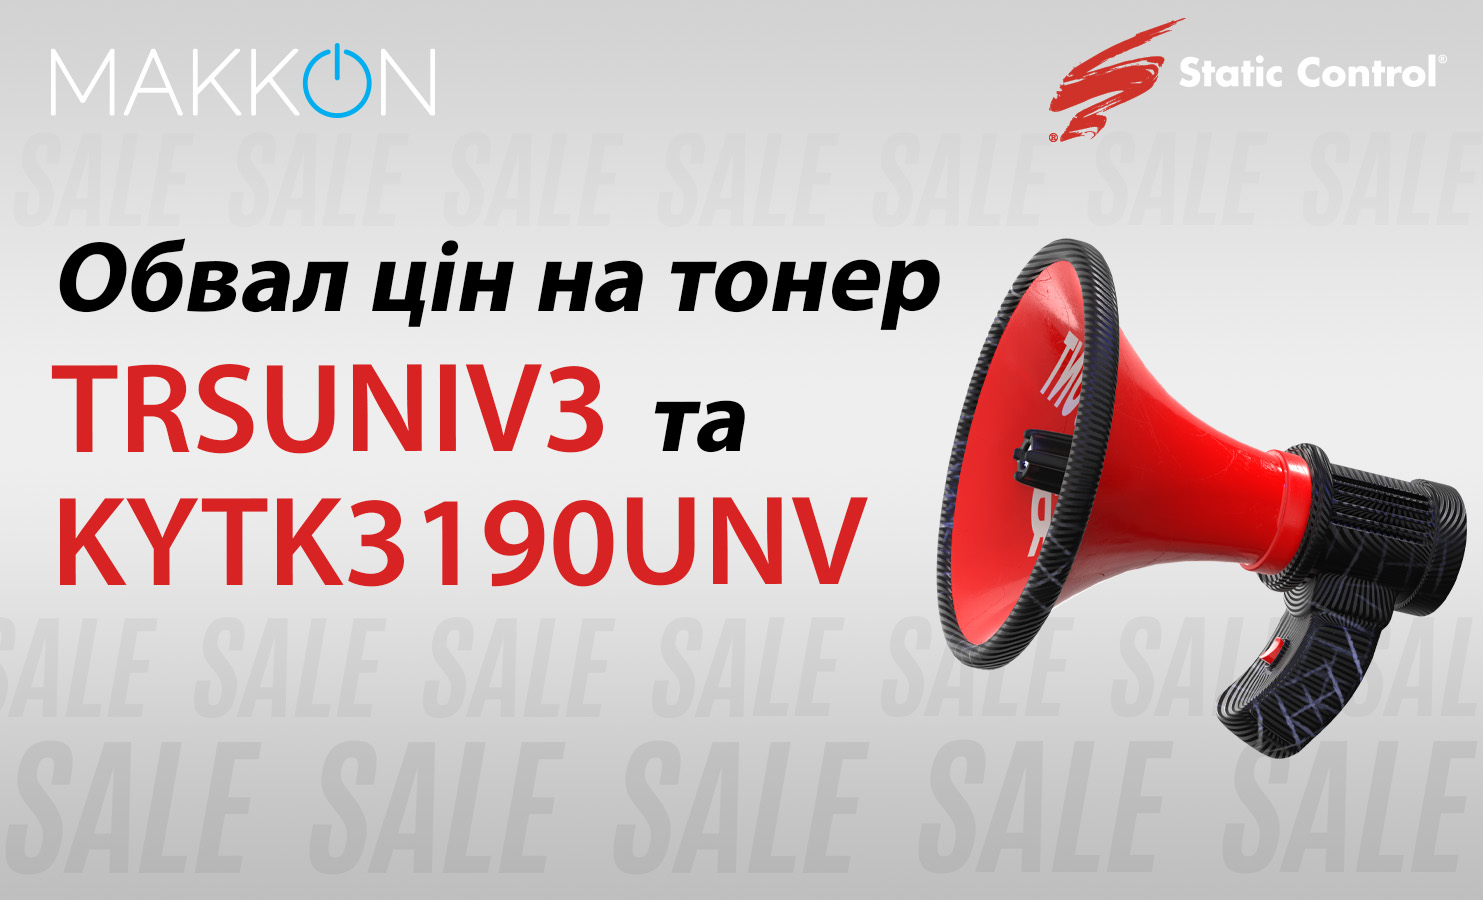 Обвал цін на тонер TRSUNIV3 та KYTK3190UNV